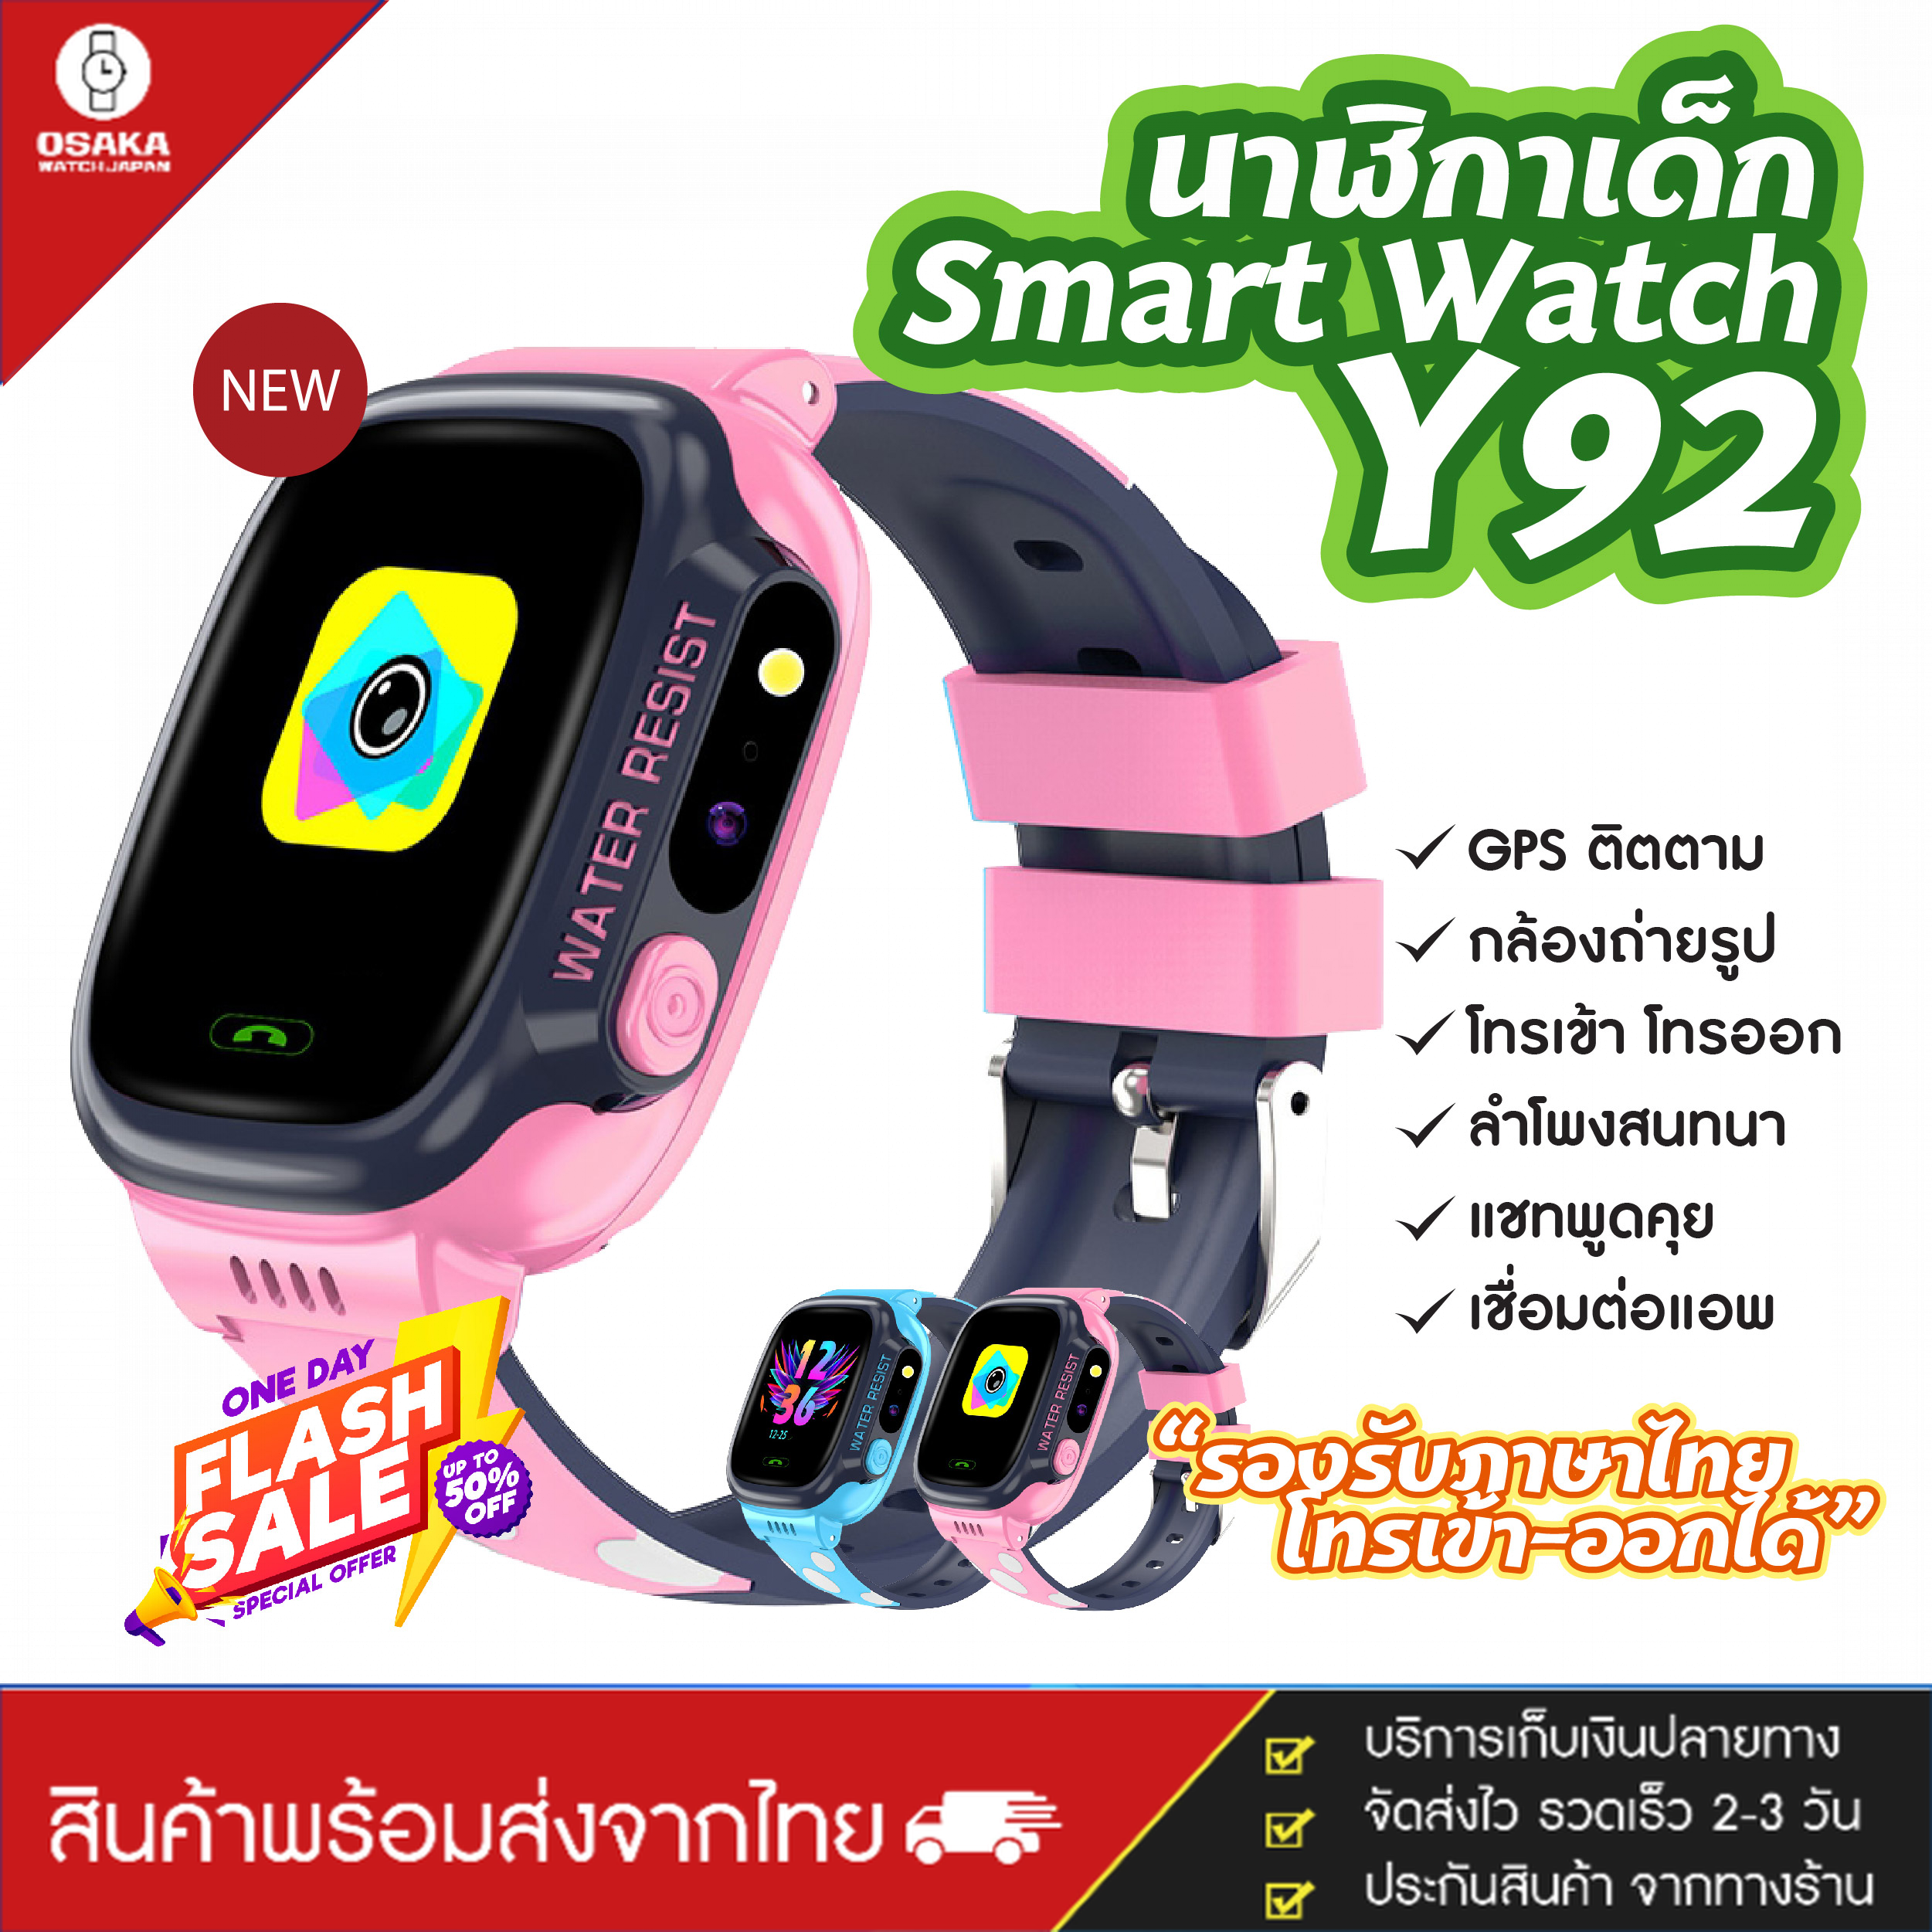 ใหม่ Smart Watch Y92 นาฬิกาสำหรับเด็ก นาฬิกาโทรศัพท์ ใส่ซิมได้ บอกตำแน่ง GPS ติดตาม  (จัดส่งไว มีบริการเก็บเงินปลายทาง)  สีสายนาฬิกา สีชมพู